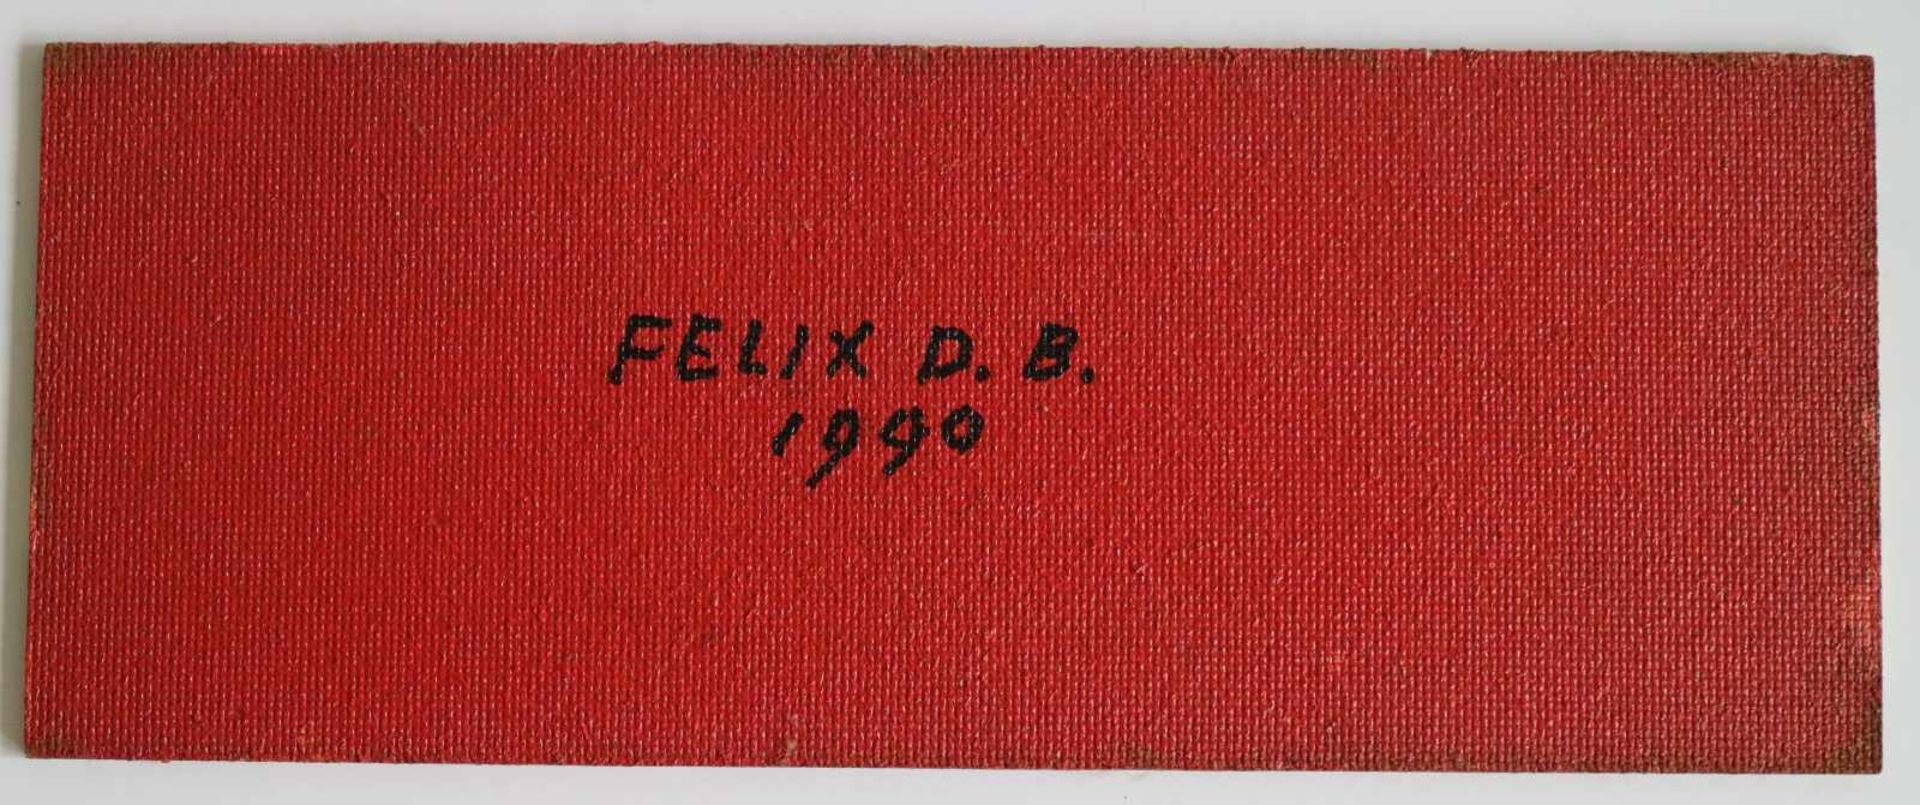 Félix DE BOECK (1898-1995) oil on panel Horizon dated 1990 33 x 13 cm not framed - Bild 2 aus 2